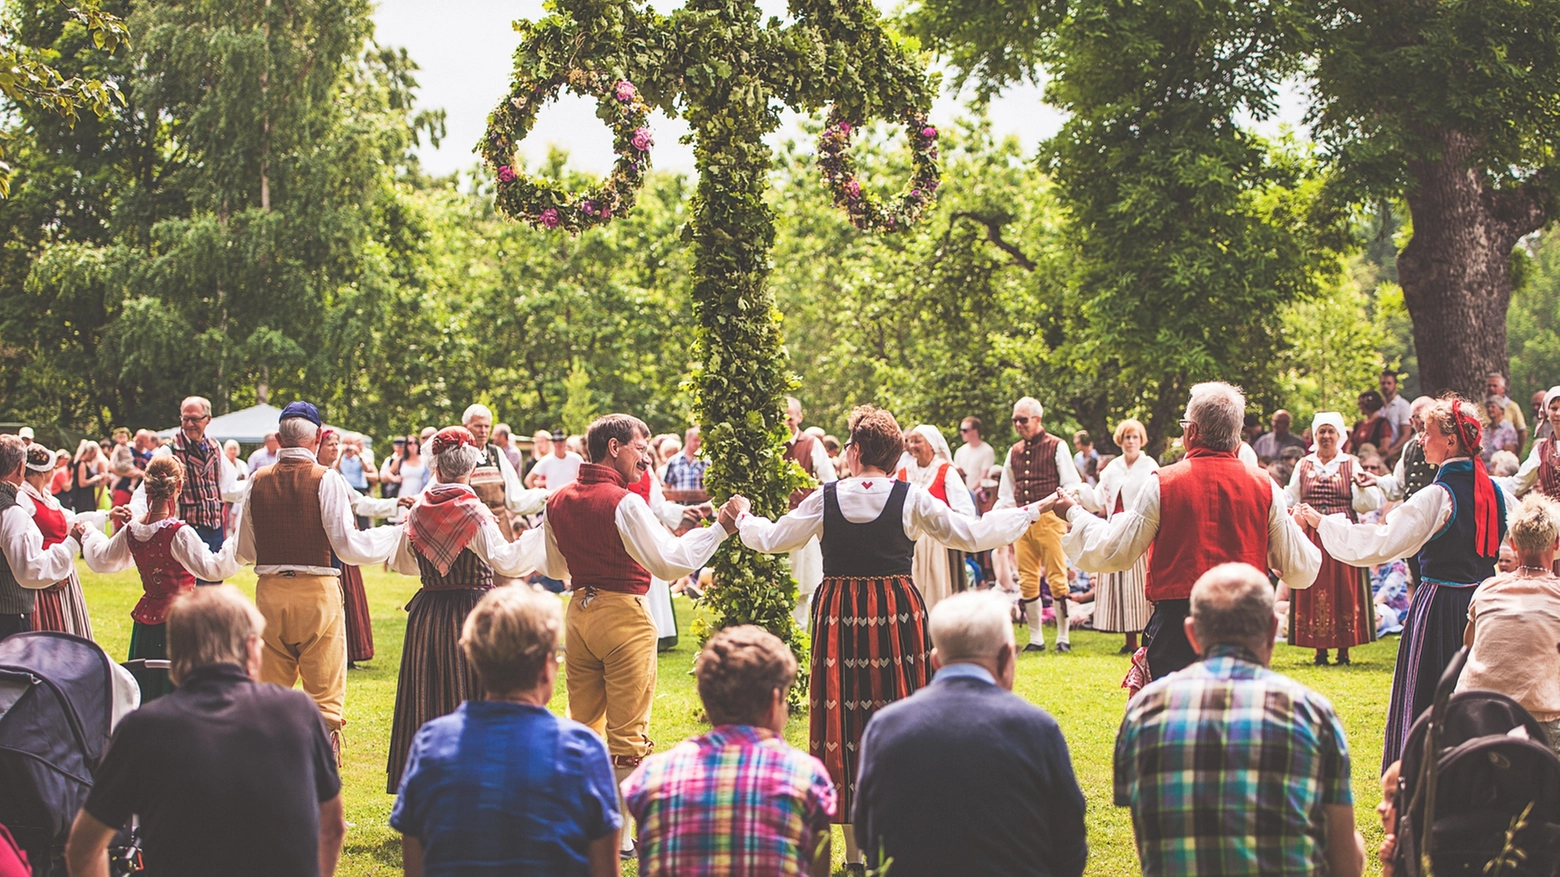 Celebrazioni del Midsummer in Svezia - Crediti: iStock